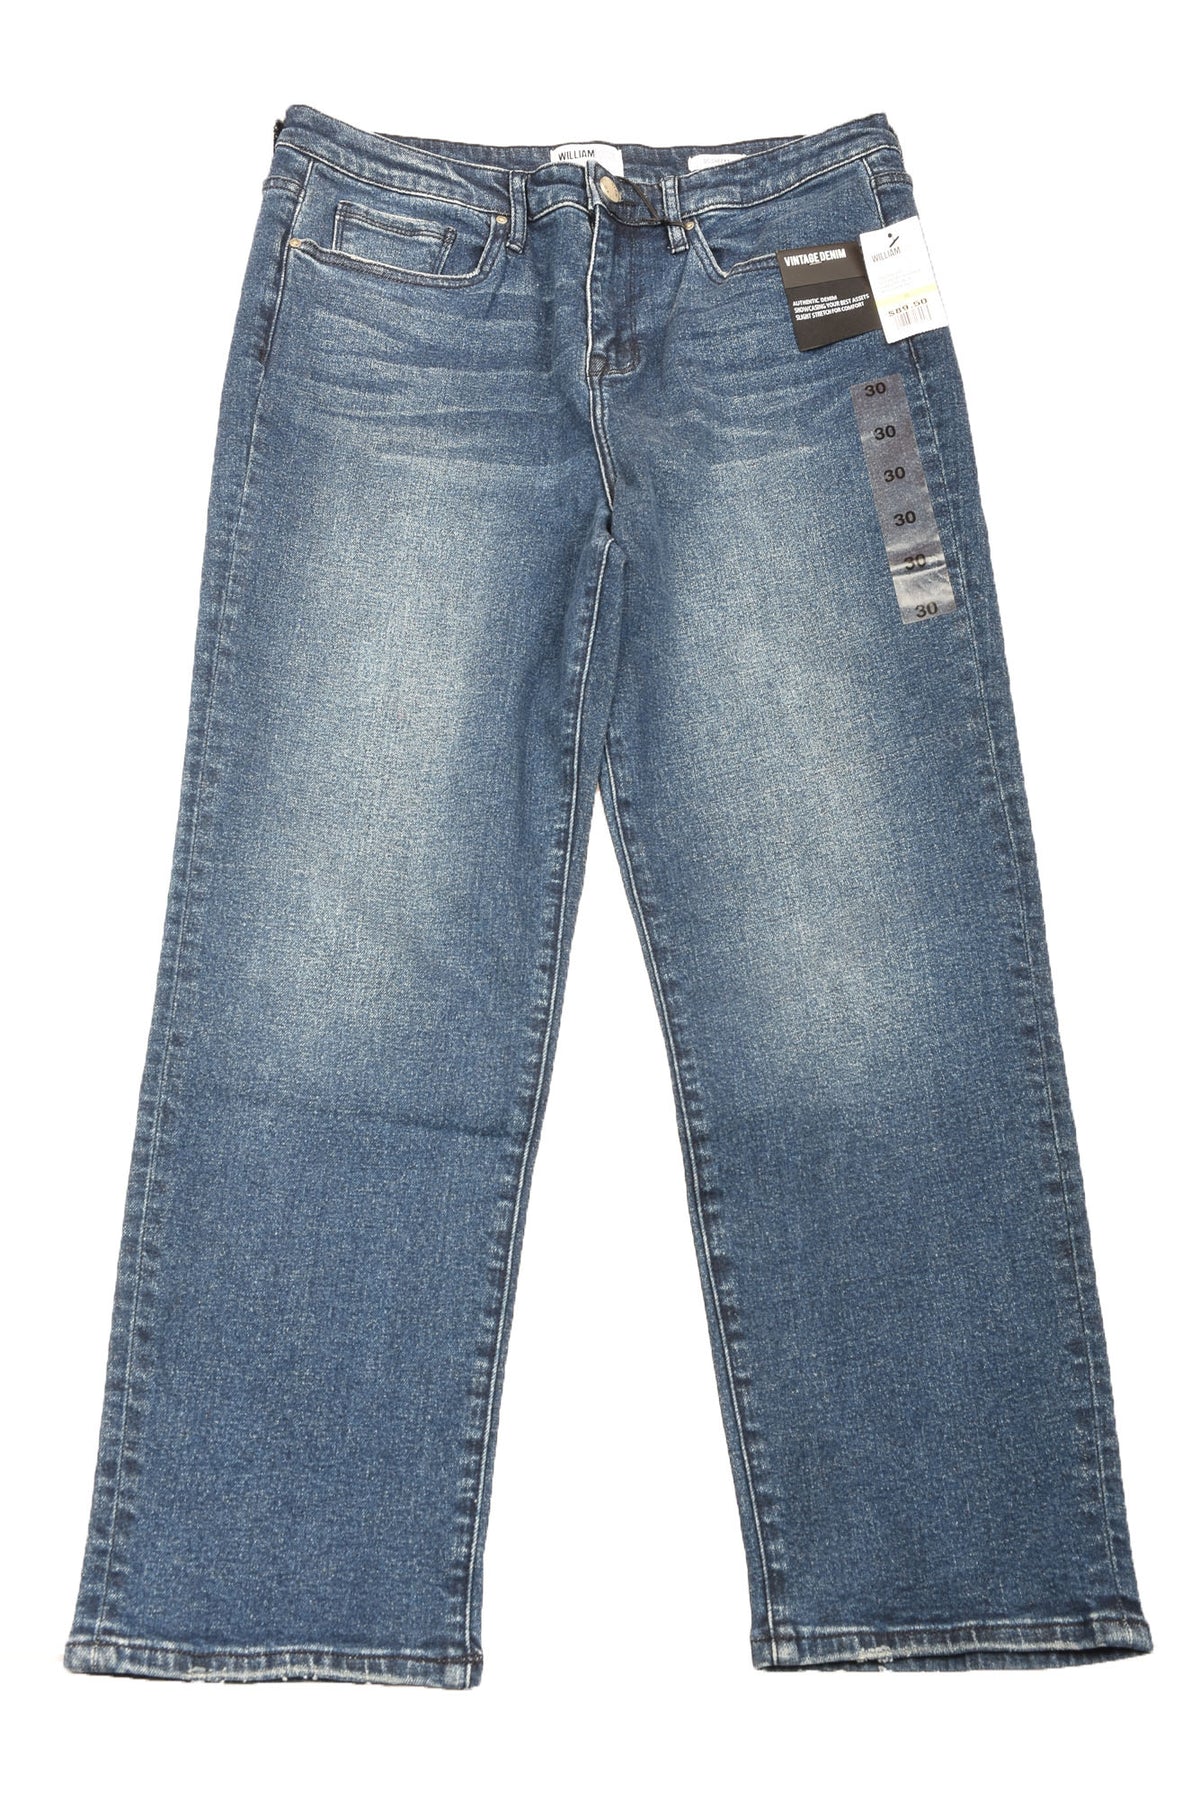 William Rast Size 30 Women&#39;s Jeans